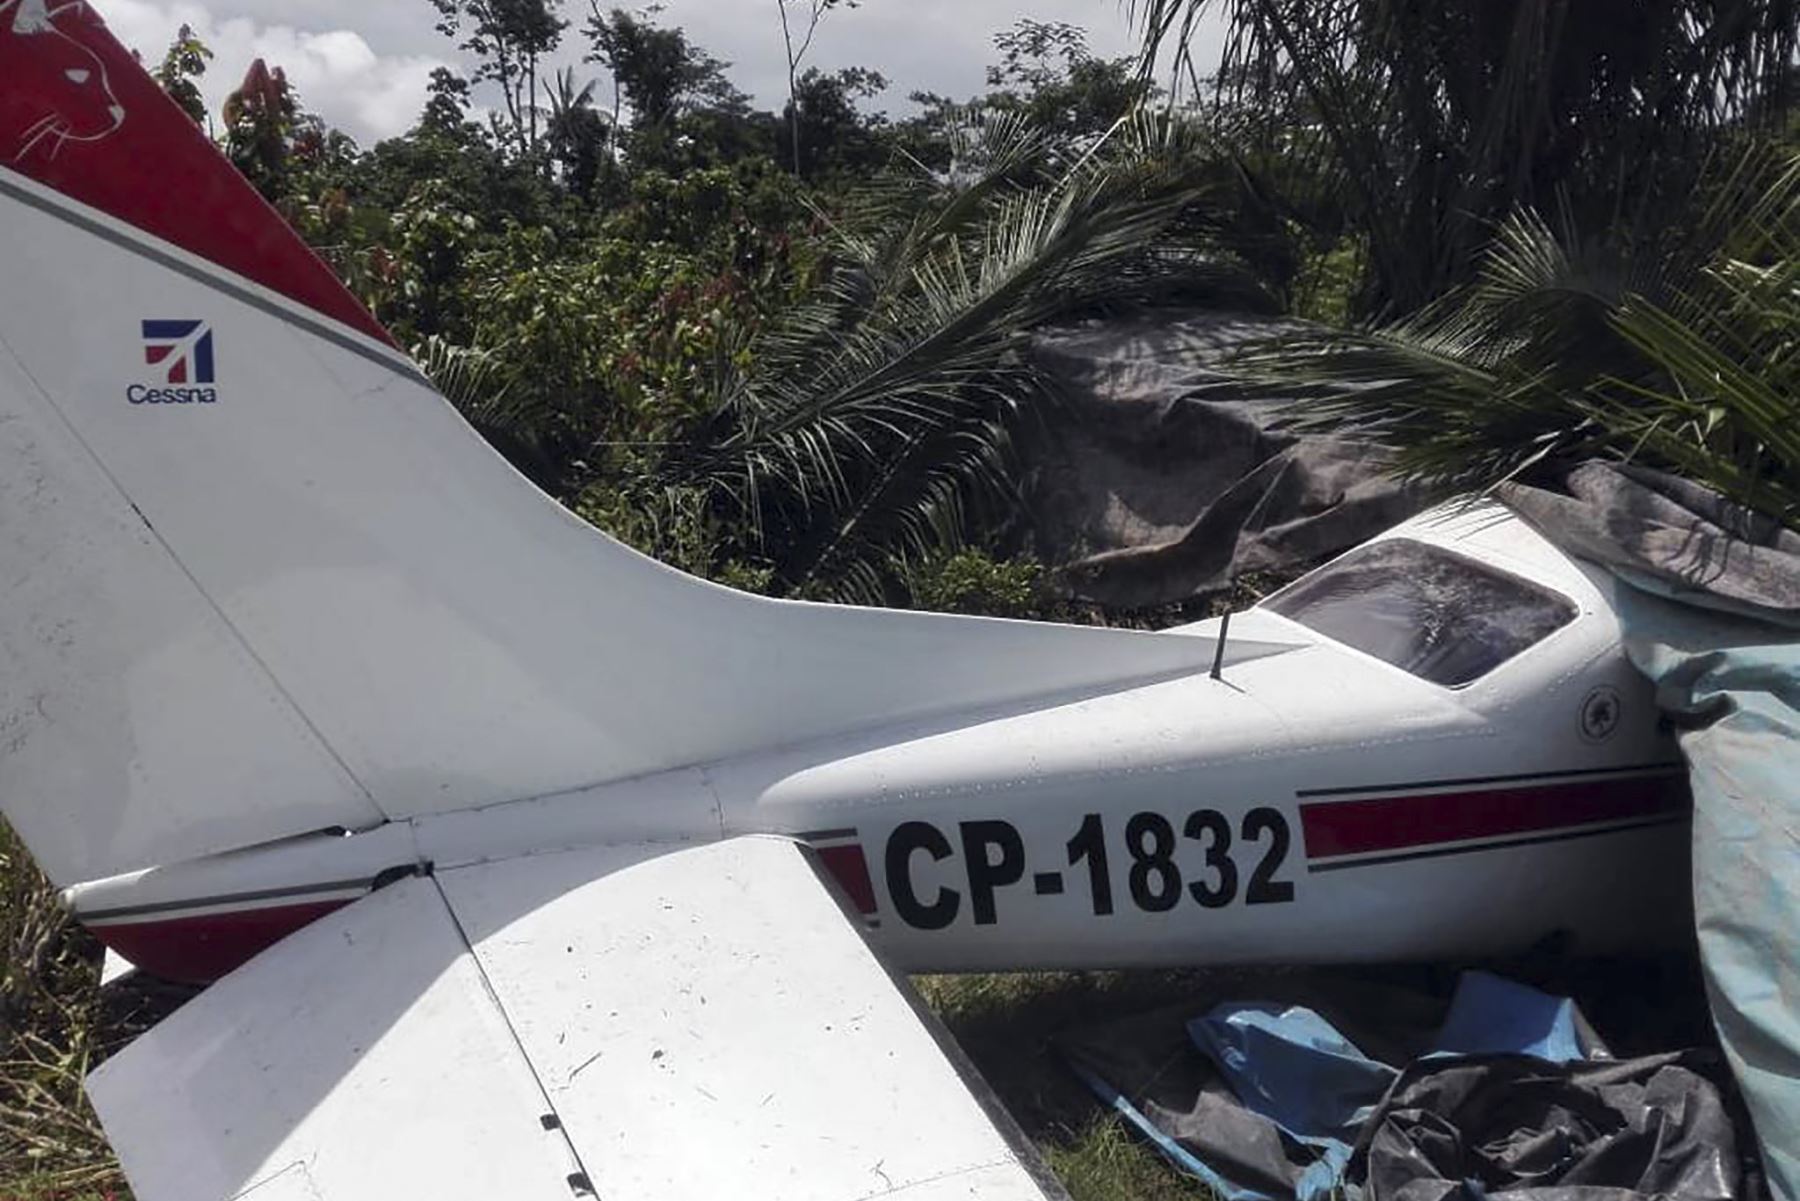 La Policía Nacional destruyó la avioneta modelo Cessna, de matrícula CP-1832. Foto: ANDINA/Mininter.